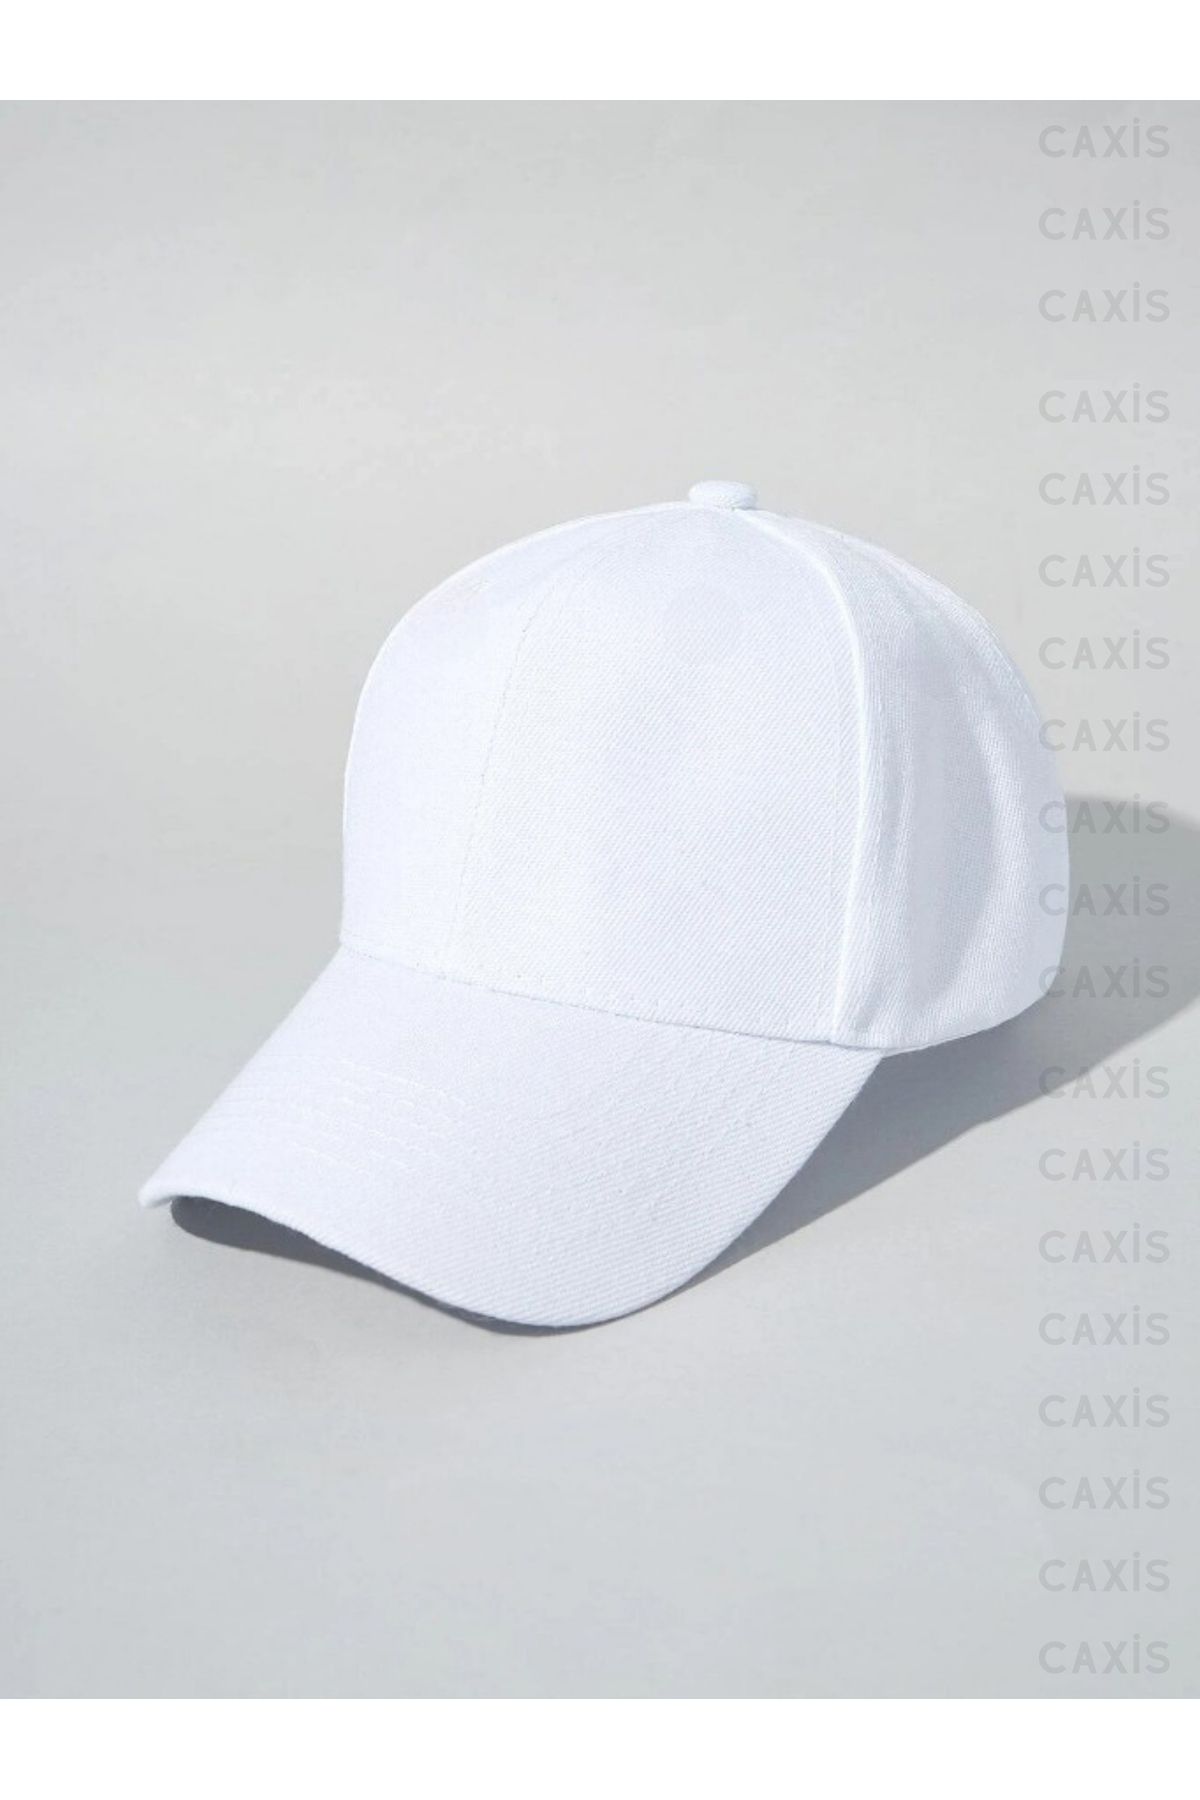 caxis Beyaz Spor Şapka Unisex Arkası Cırtlı Ayarlanabilir